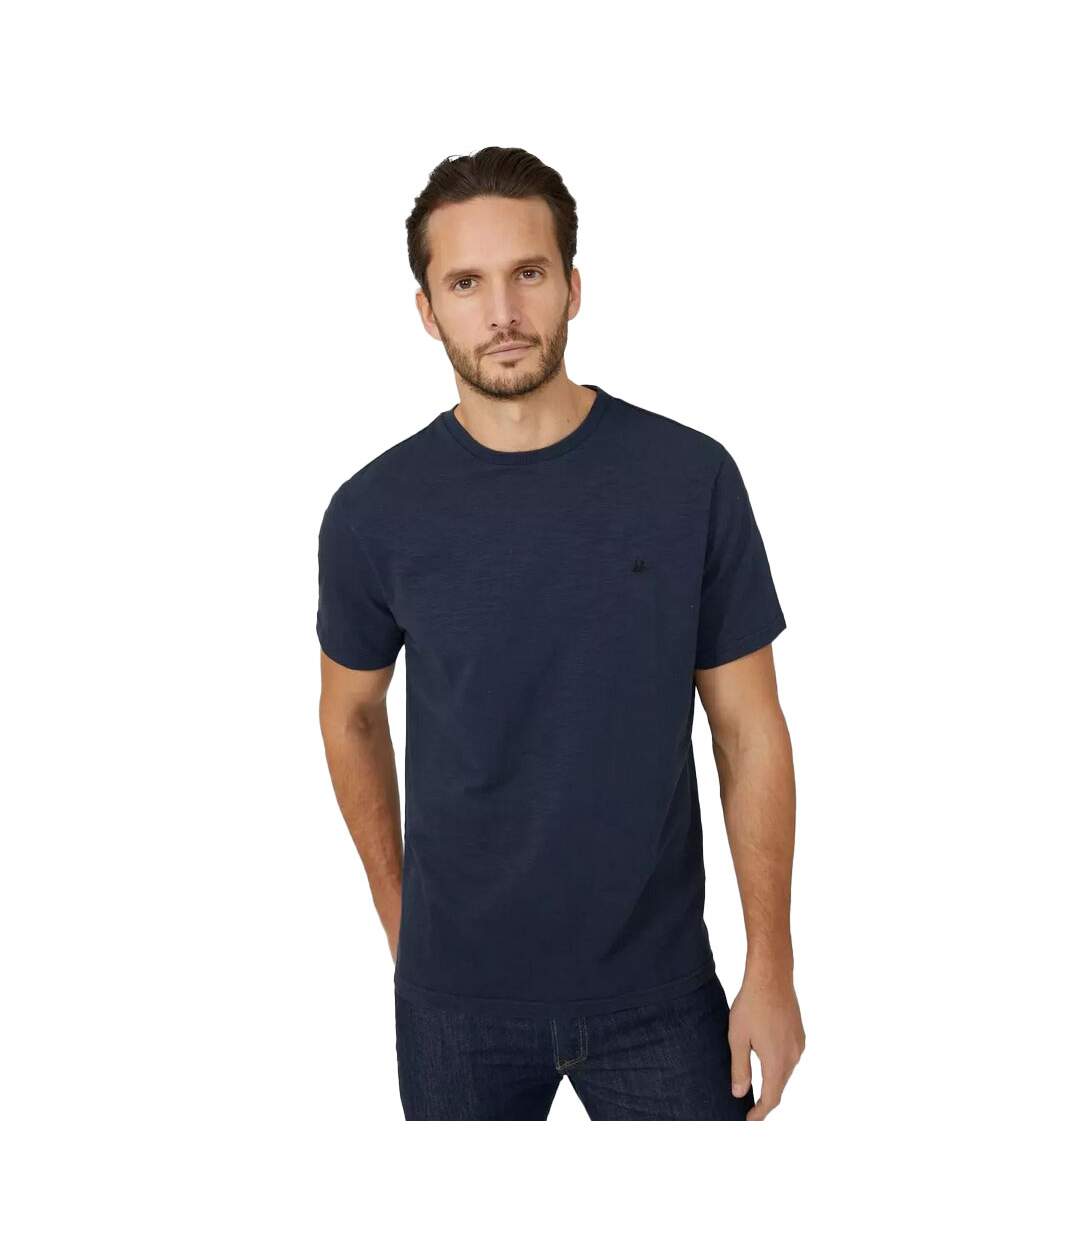 Mantaray - T-shirt - Homme (Bleu foncé) - UTDH2946